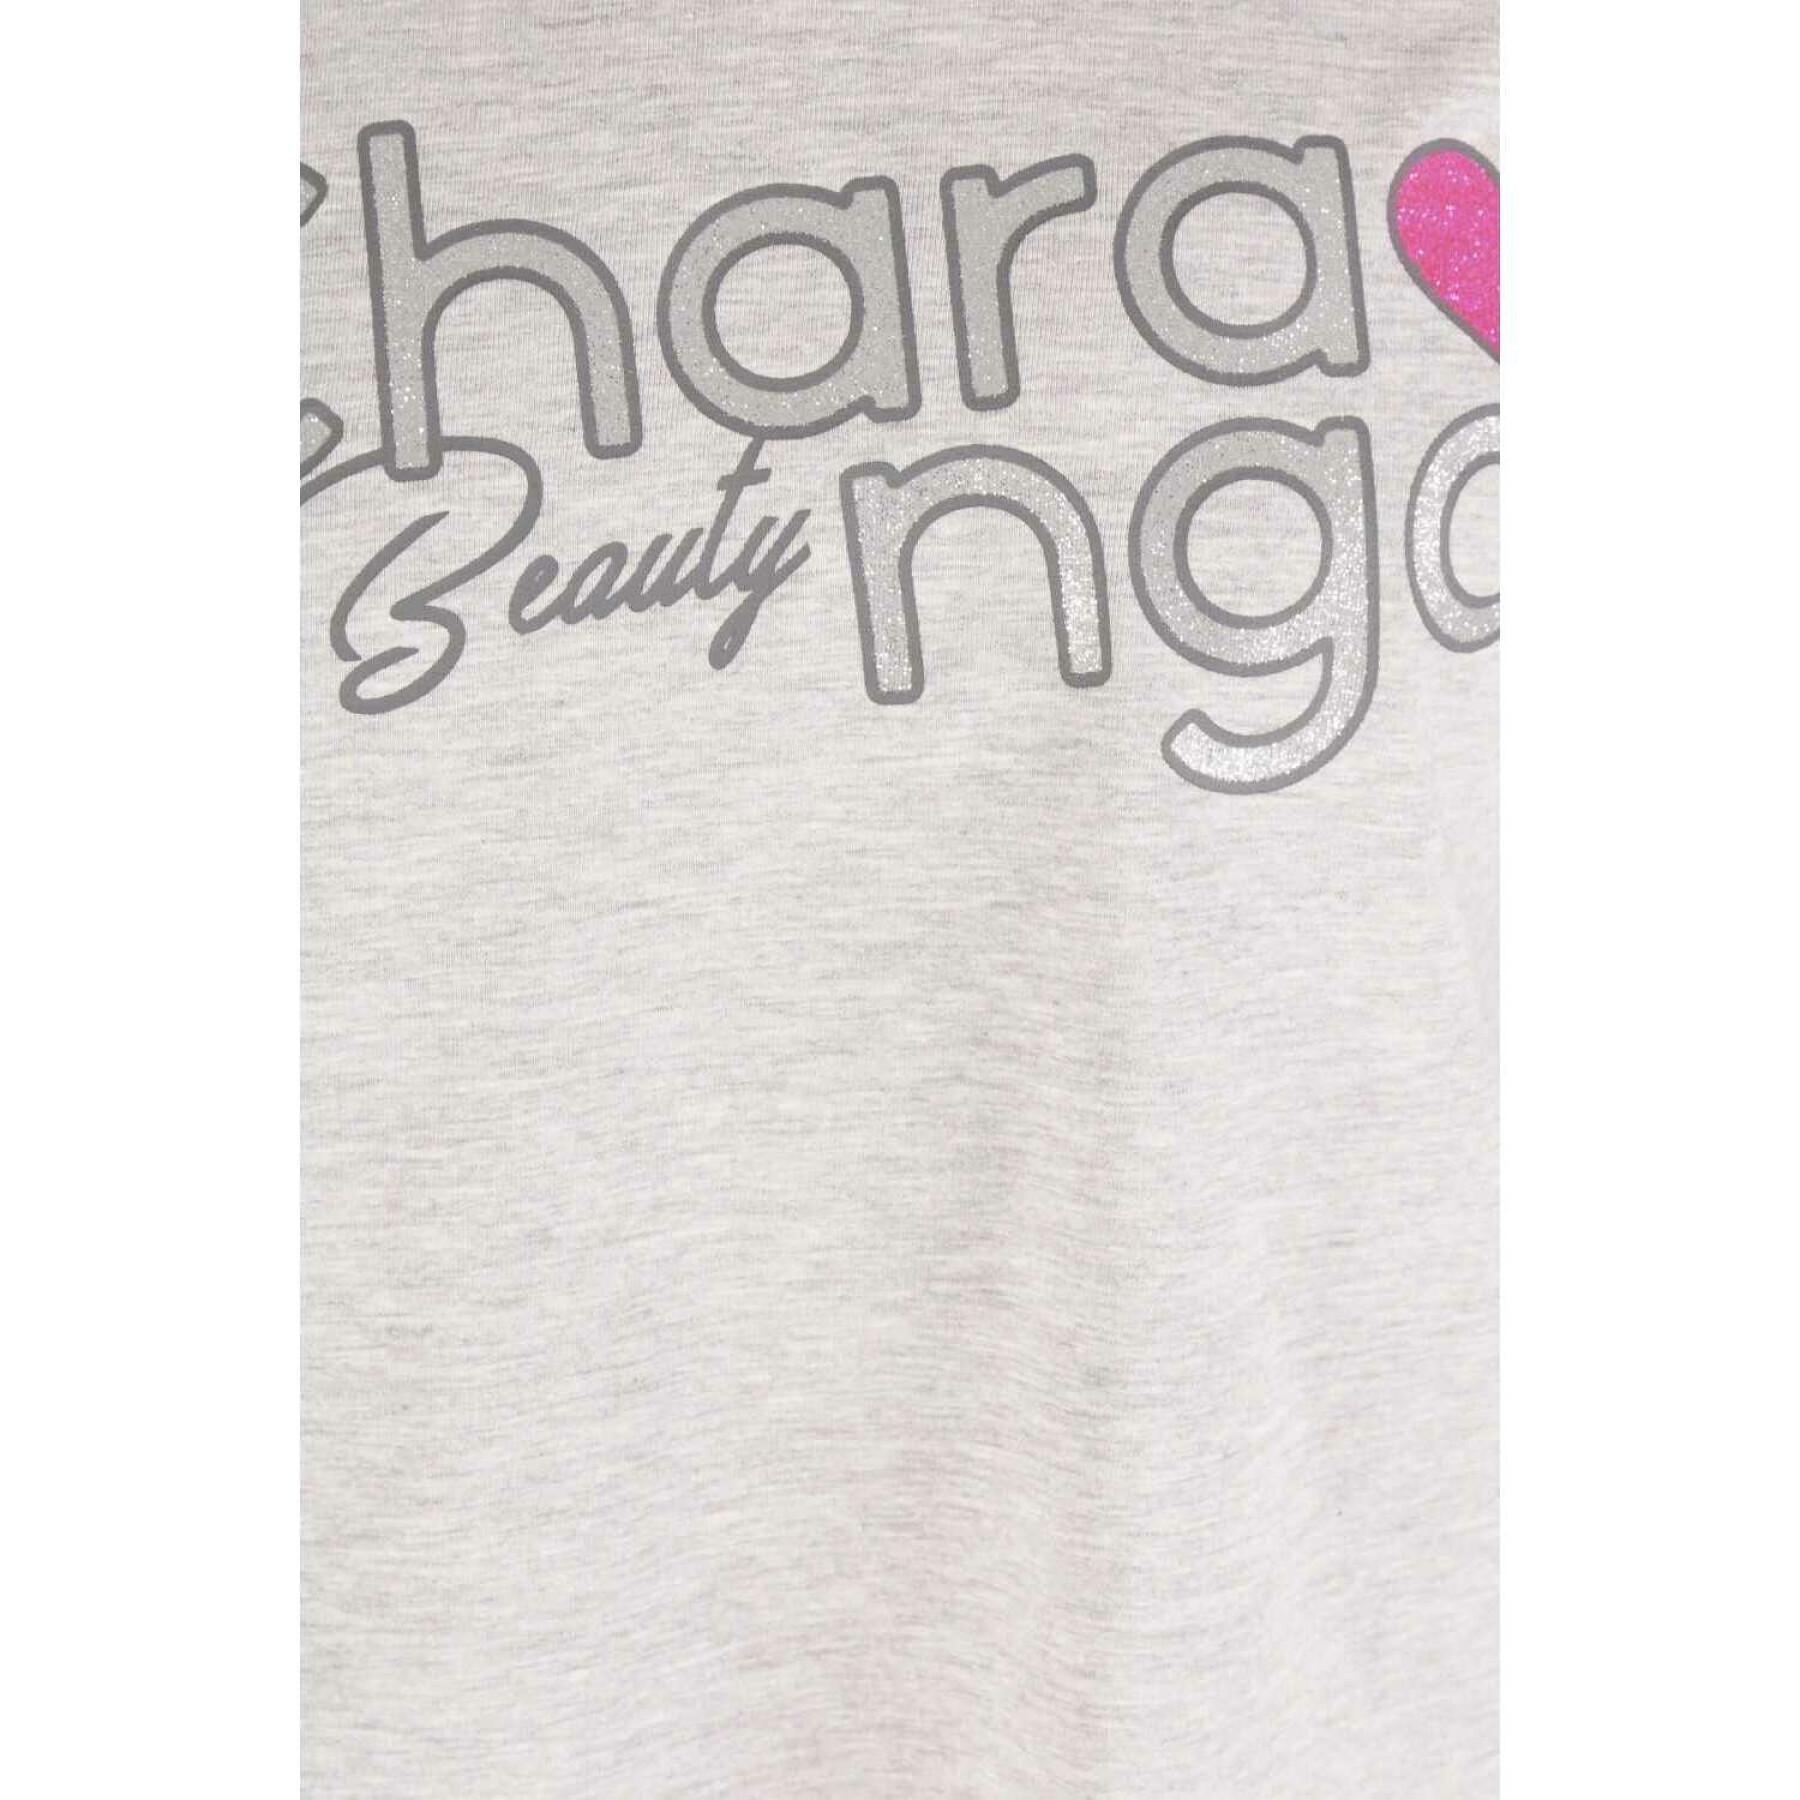 Koszulka dla dziewczynki Charanga Confix